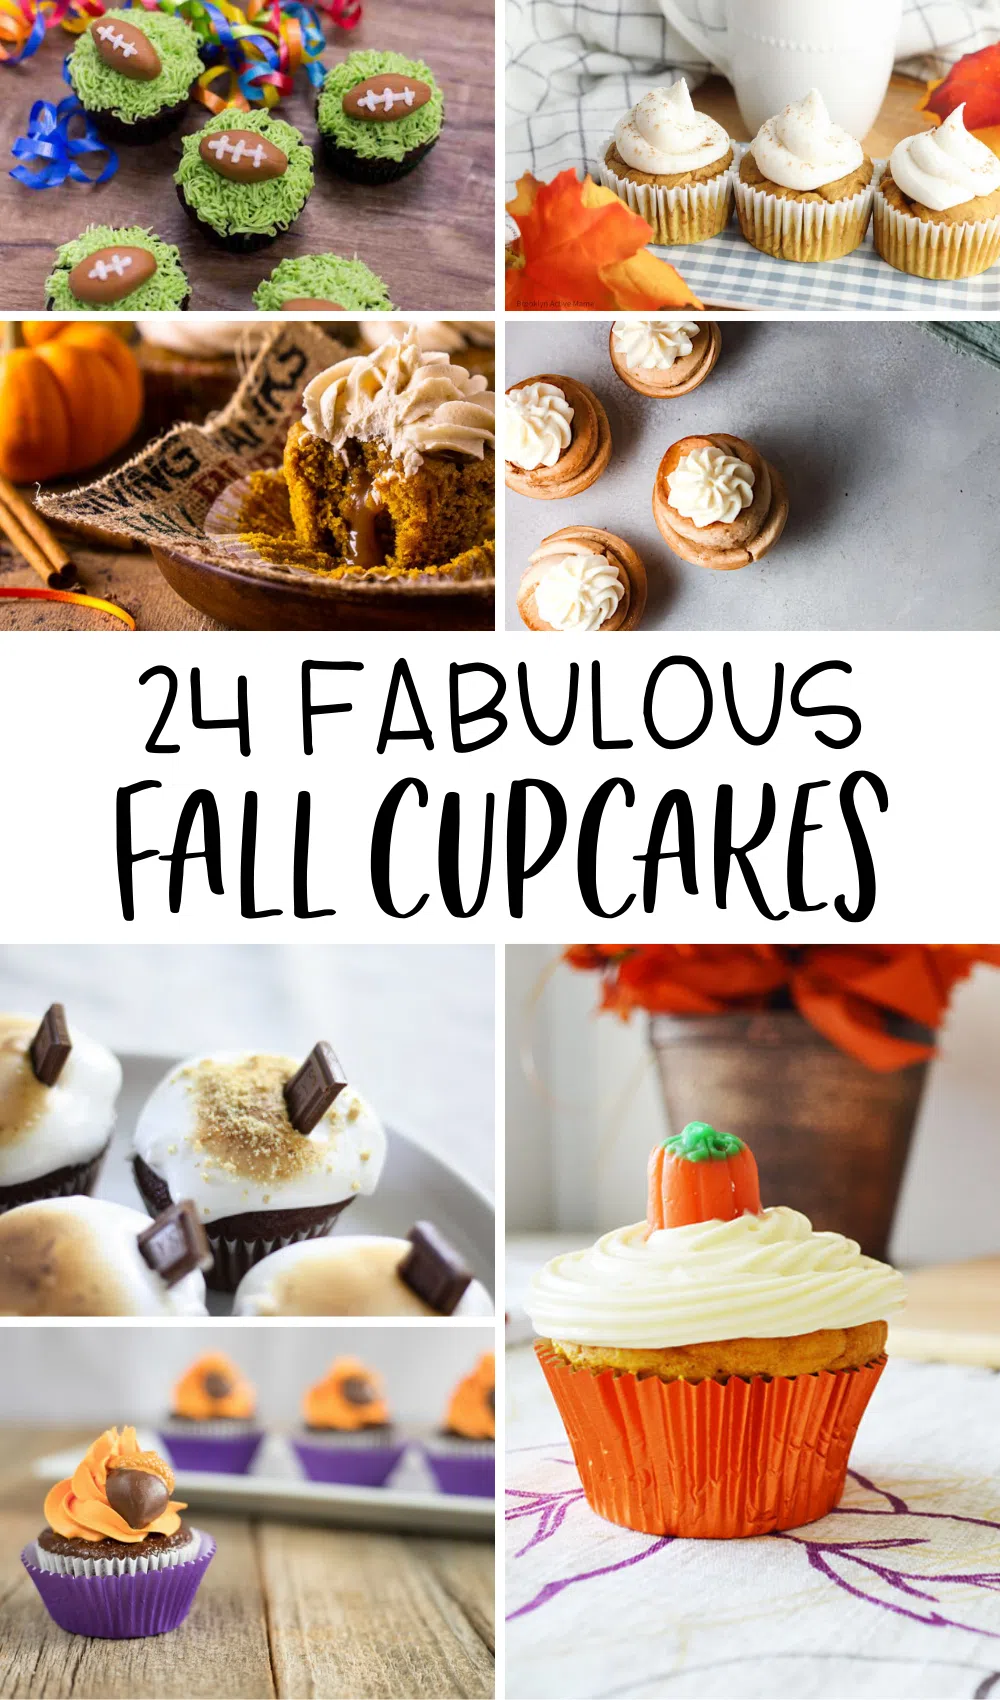 24 fabulous fall cupcakes